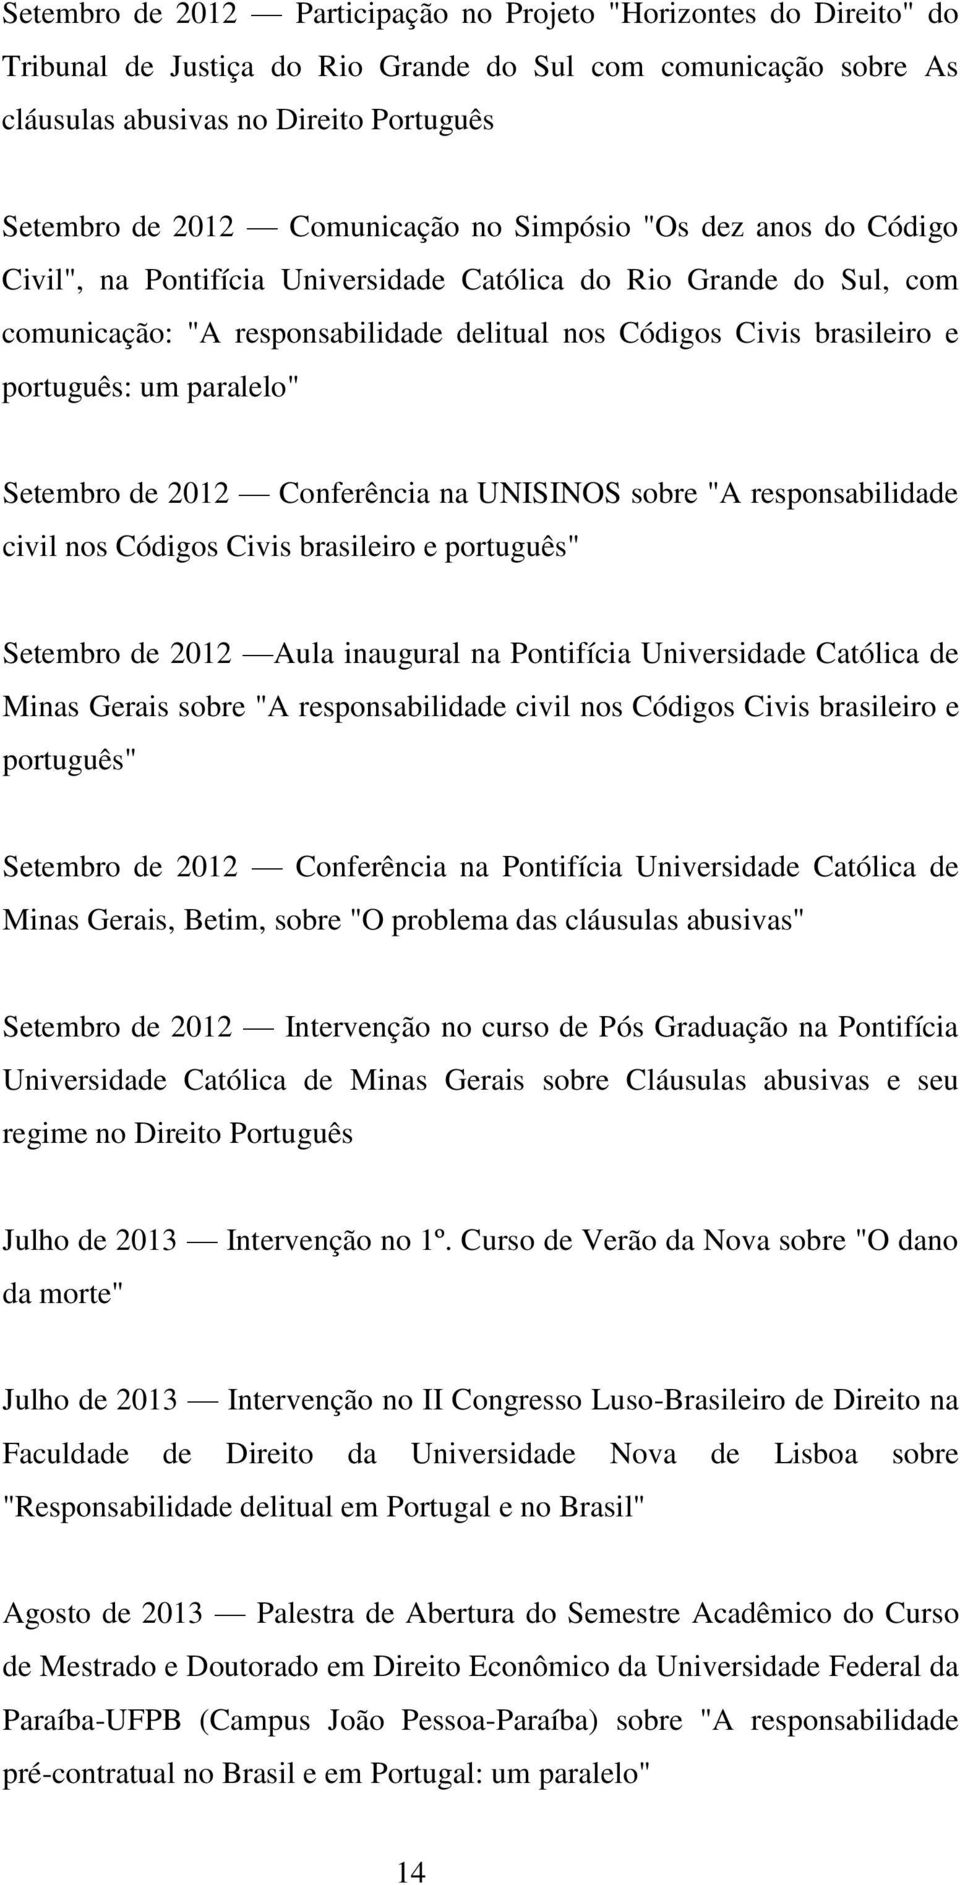 português: um paralelo" Setembro de 2012 Conferência na UNISINOS sobre "A responsabilidade civil nos Códigos Civis brasileiro e português" Setembro de 2012 Aula inaugural na Pontifícia Universidade